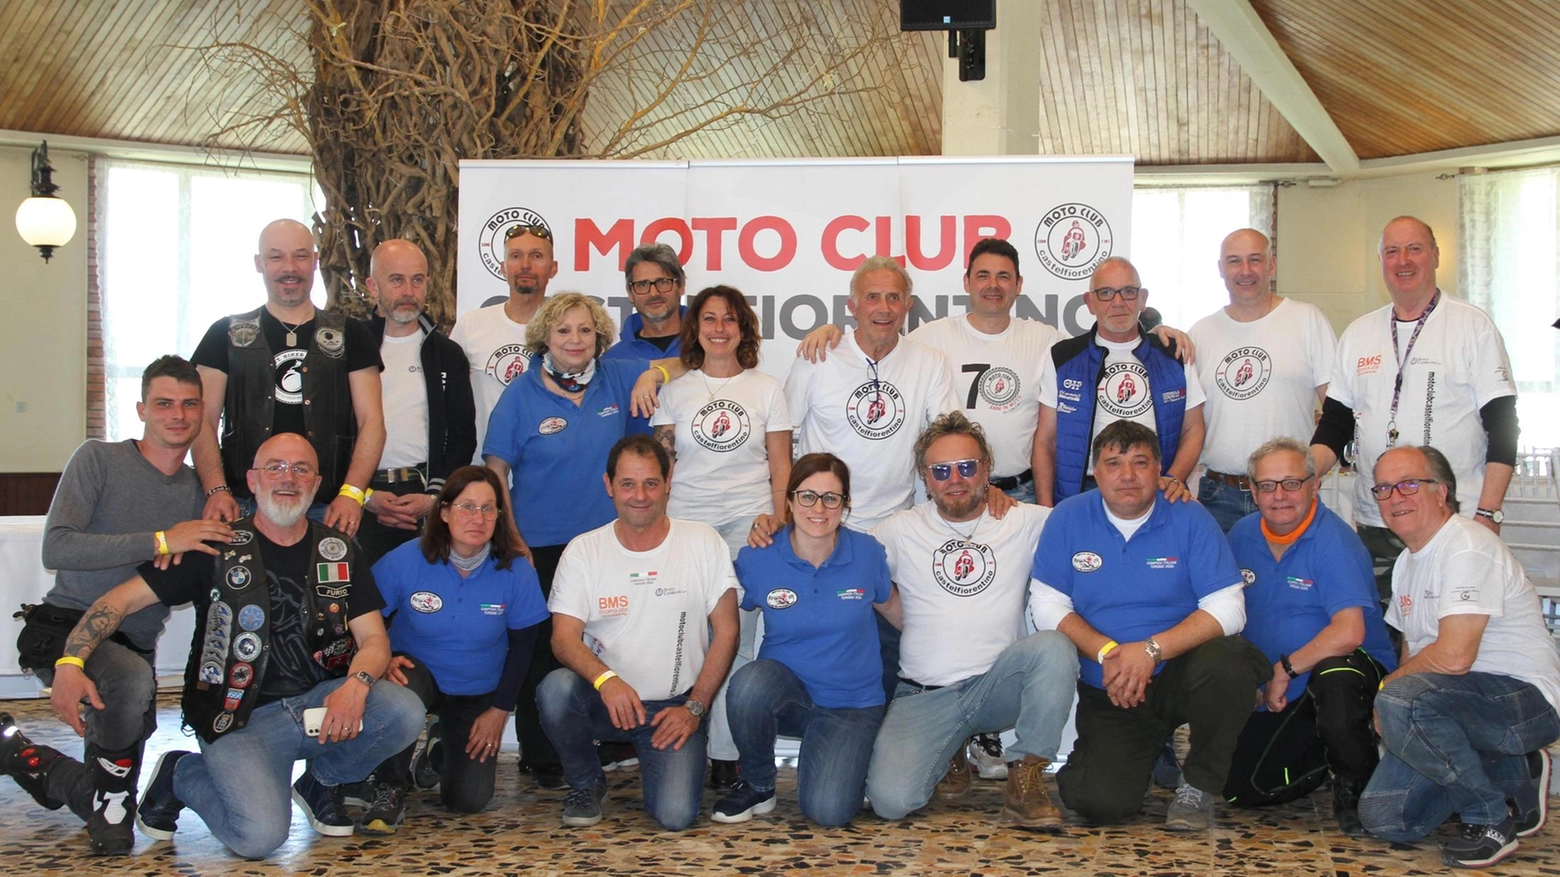 Il 38° Motoraduno Nazionale a Castelfiorentino ha visto la partecipazione di 300 motociclisti da tutta Italia e oltre. Dopo un giro turistico e cena con intrattenimento musicale, la manifestazione si è conclusa con premiazioni e ringraziamenti da parte del presidente del Moto Club locale.